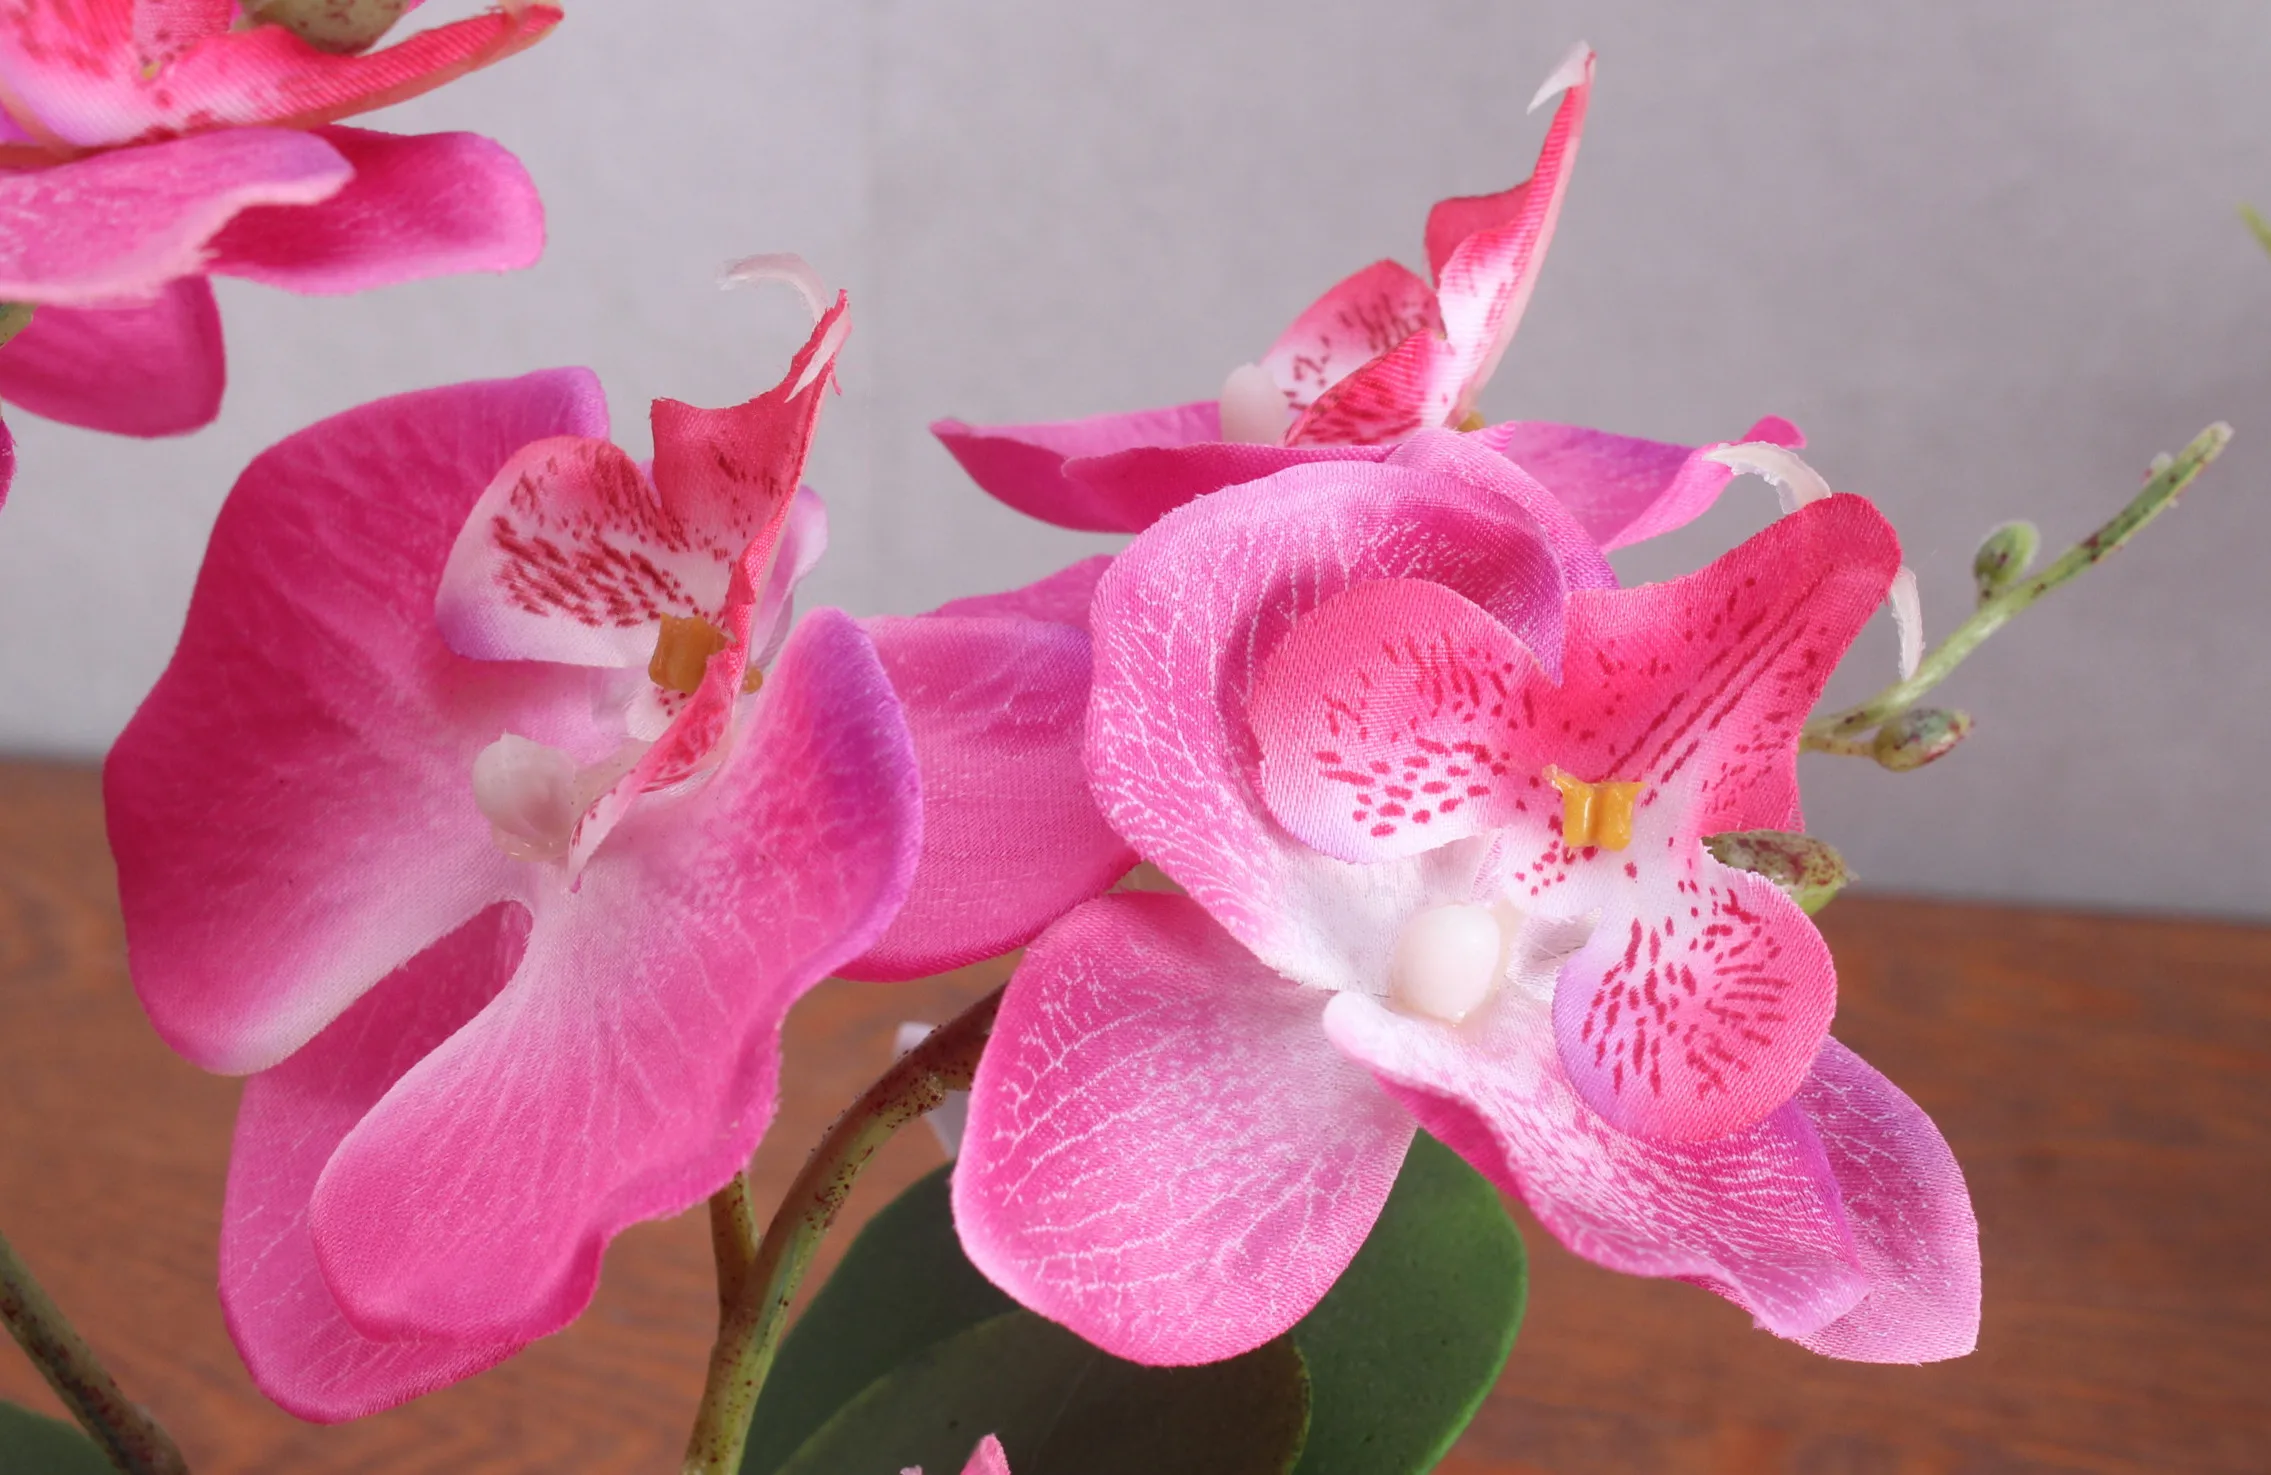 3 ветки искусственные цветы, орхидеи растение в горшках шелк фаленопсис пена лист пластиковая ваза поддельные цветы Сад домашний декор 1 компл. Бонсай